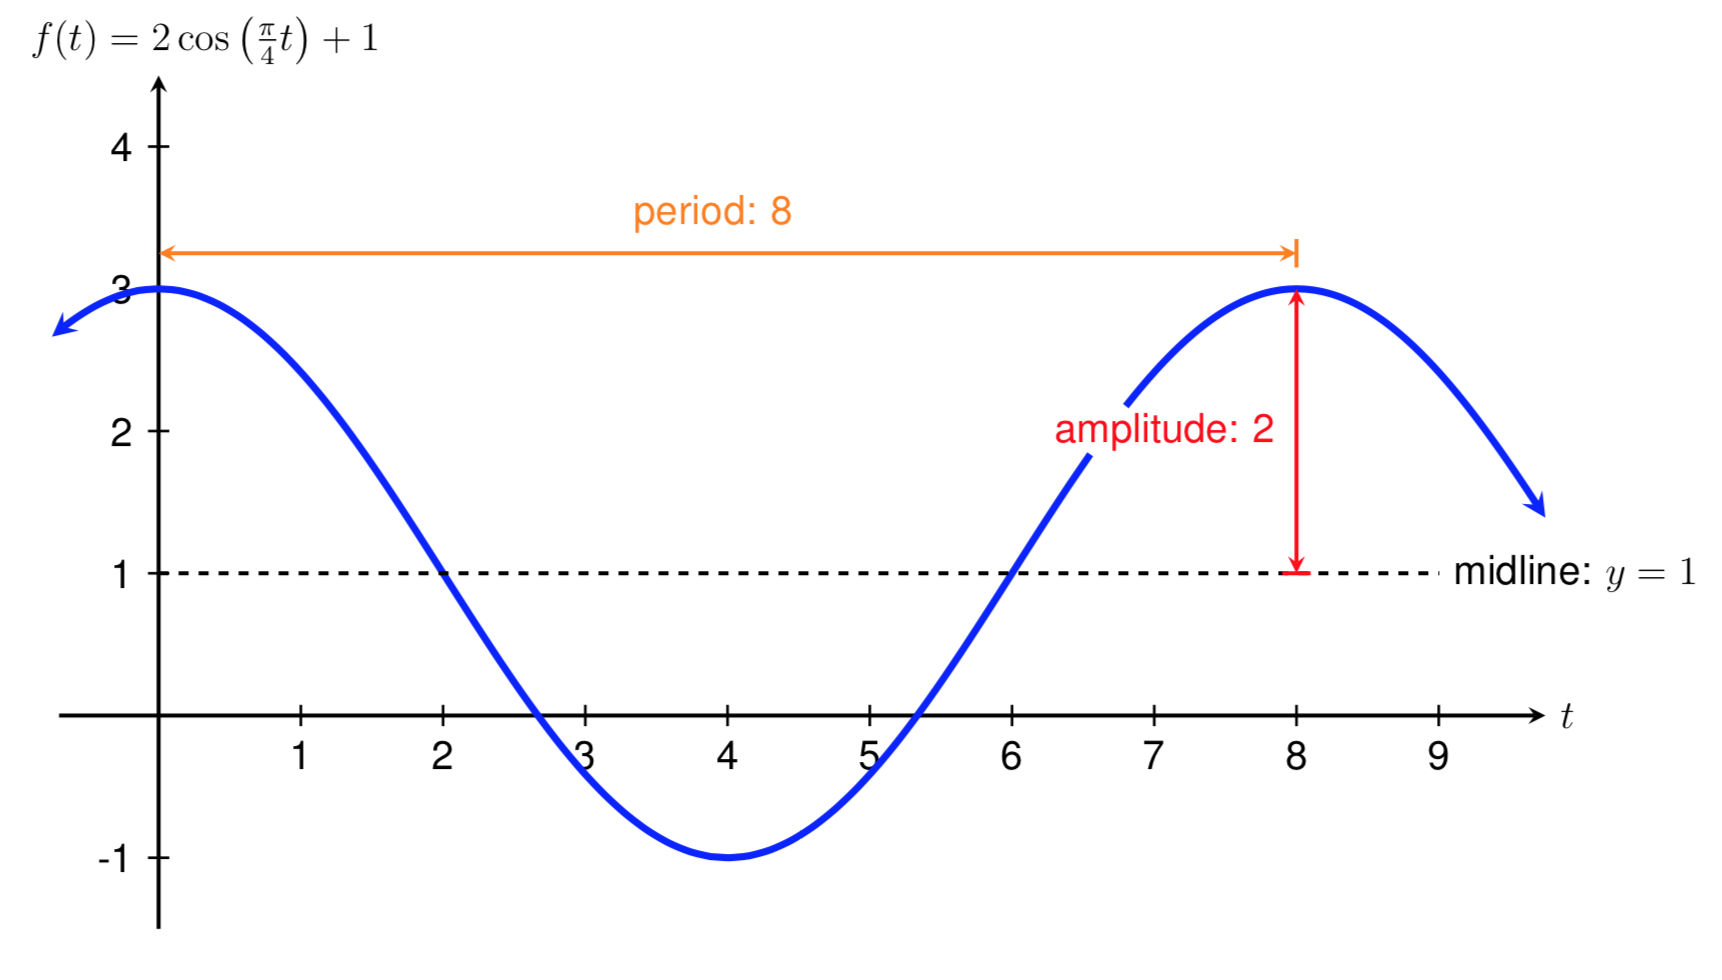 graph of 2cos(pi/4t)+1